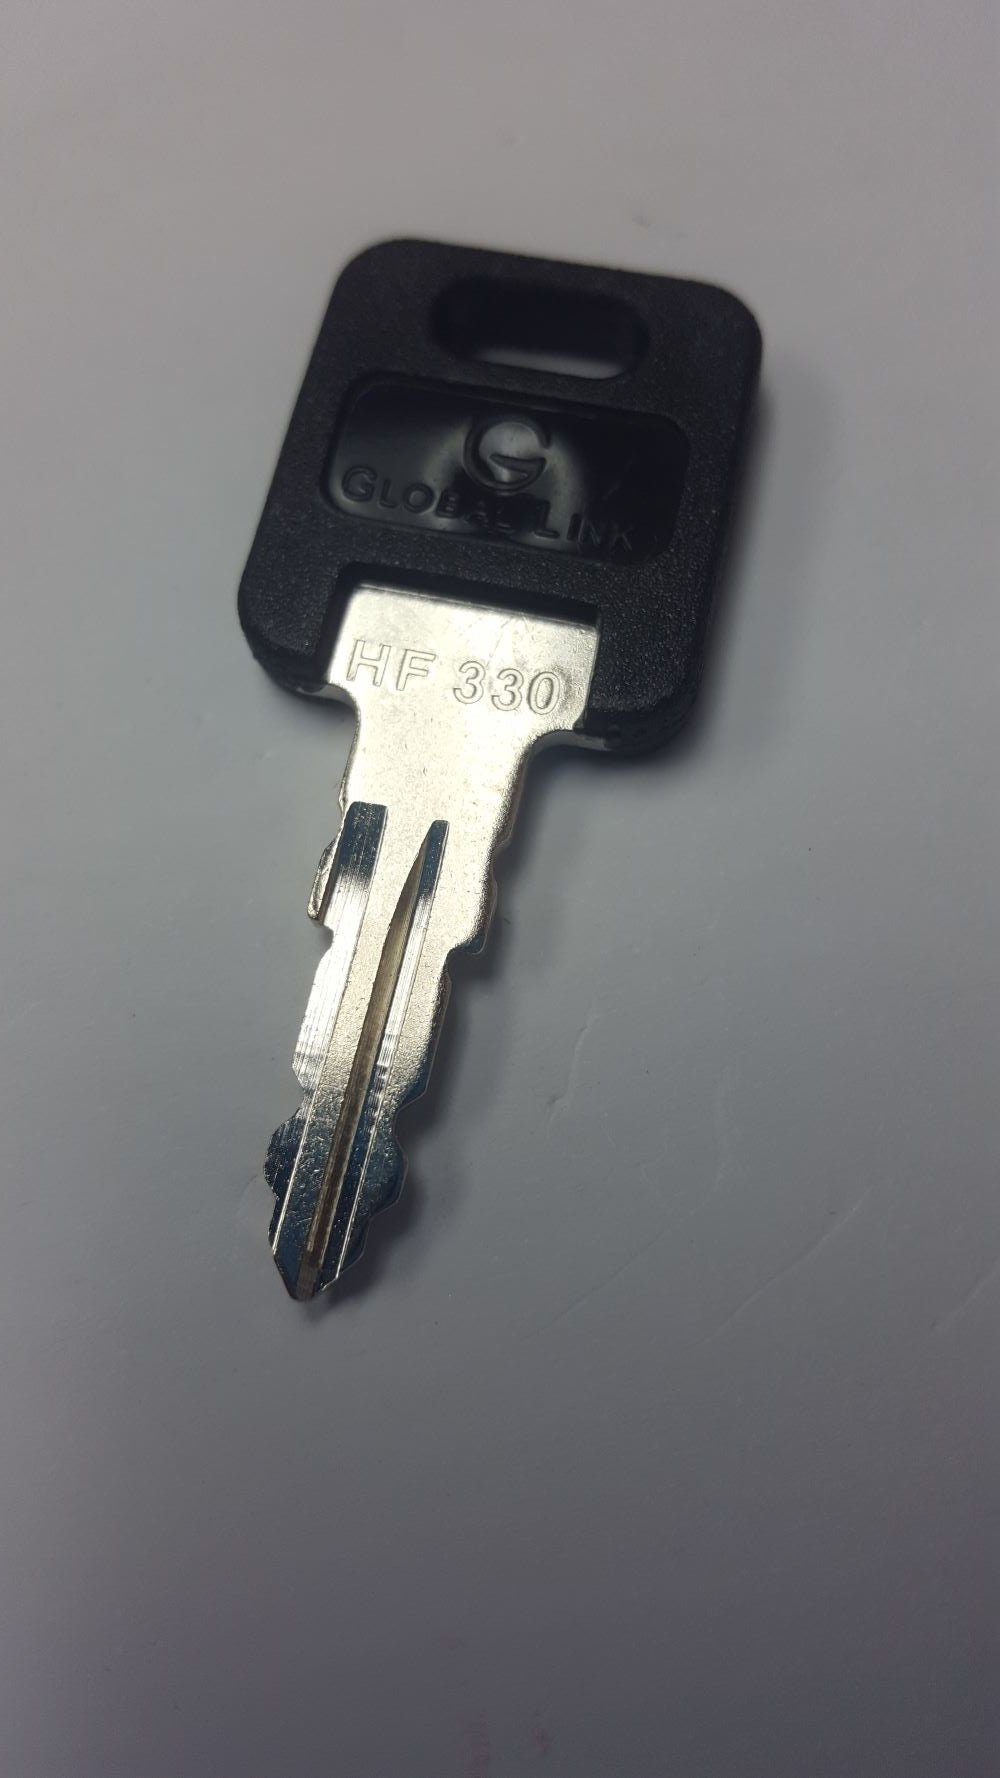 CPG KEY-HF-330 Pre-cut Stamped FIC Replacemnt HF330 Key